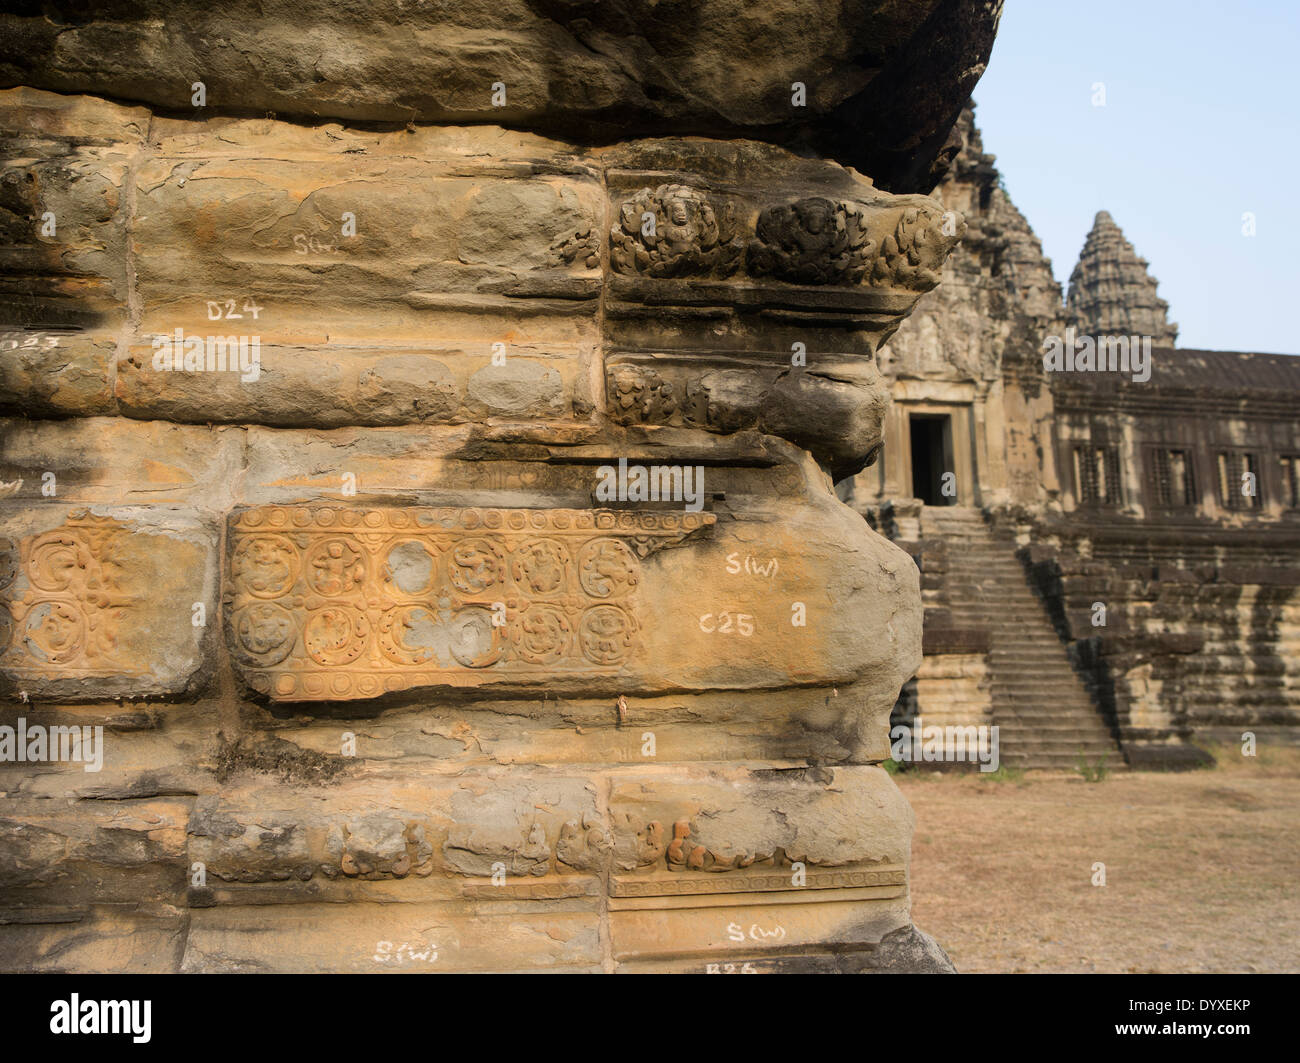 Numeri e lettere scritte sulle pietre di documentare la loro posizione a Angkor Wat, Sito Patrimonio Mondiale dell'UNESCO. Siem Reap, Cambogia Foto Stock